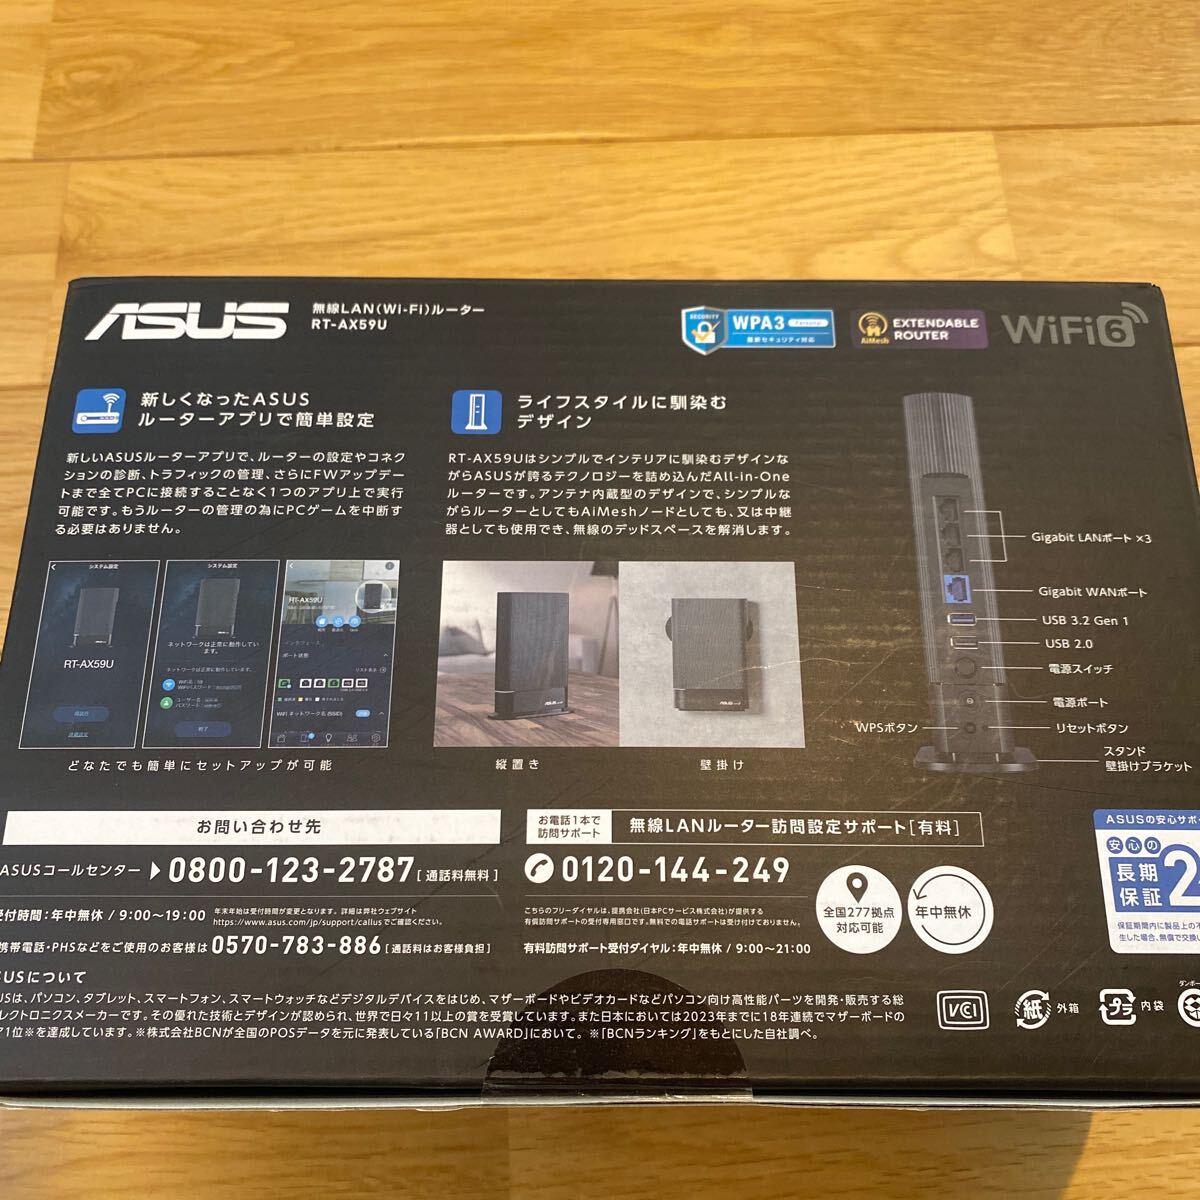 ASUSe стул -s беспроводной LAN маршрутизатор RT-AX59U нераспечатанный новый товар 